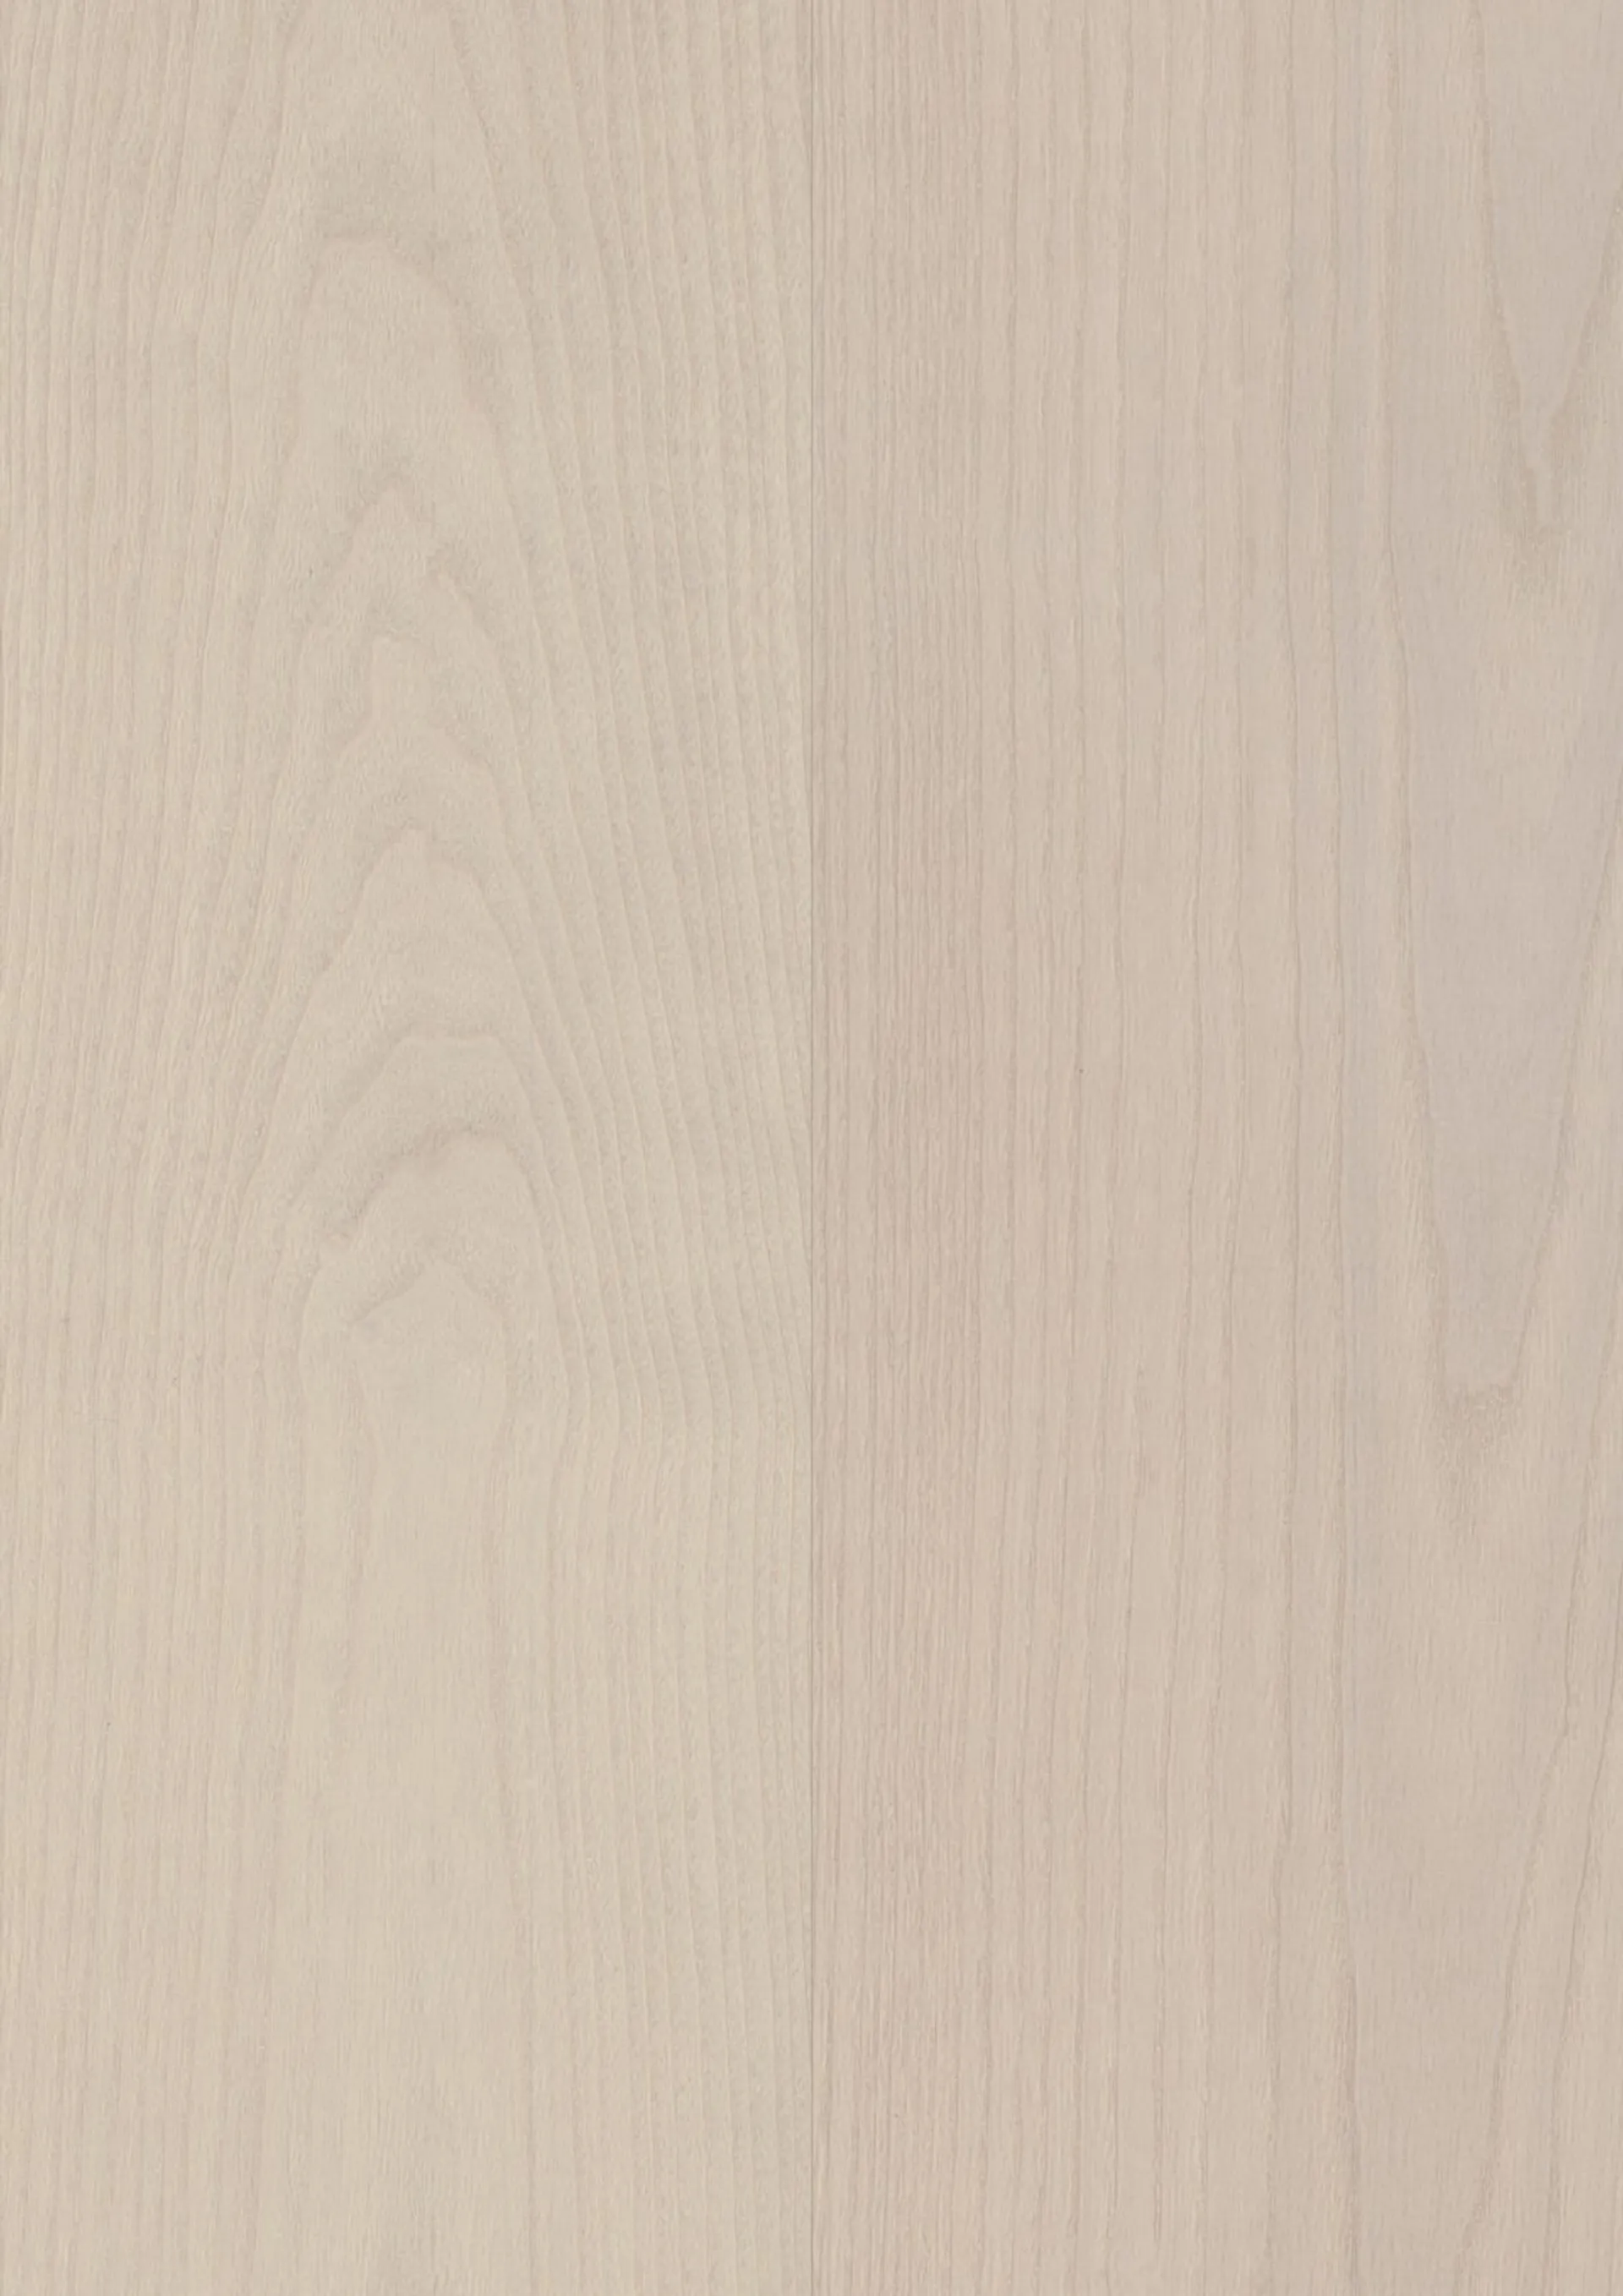 Bjelin kovetettu puulattia Saarni Gullarp 3.0 XL Powder white Mattalakka, käyttöluokka 33 - 4